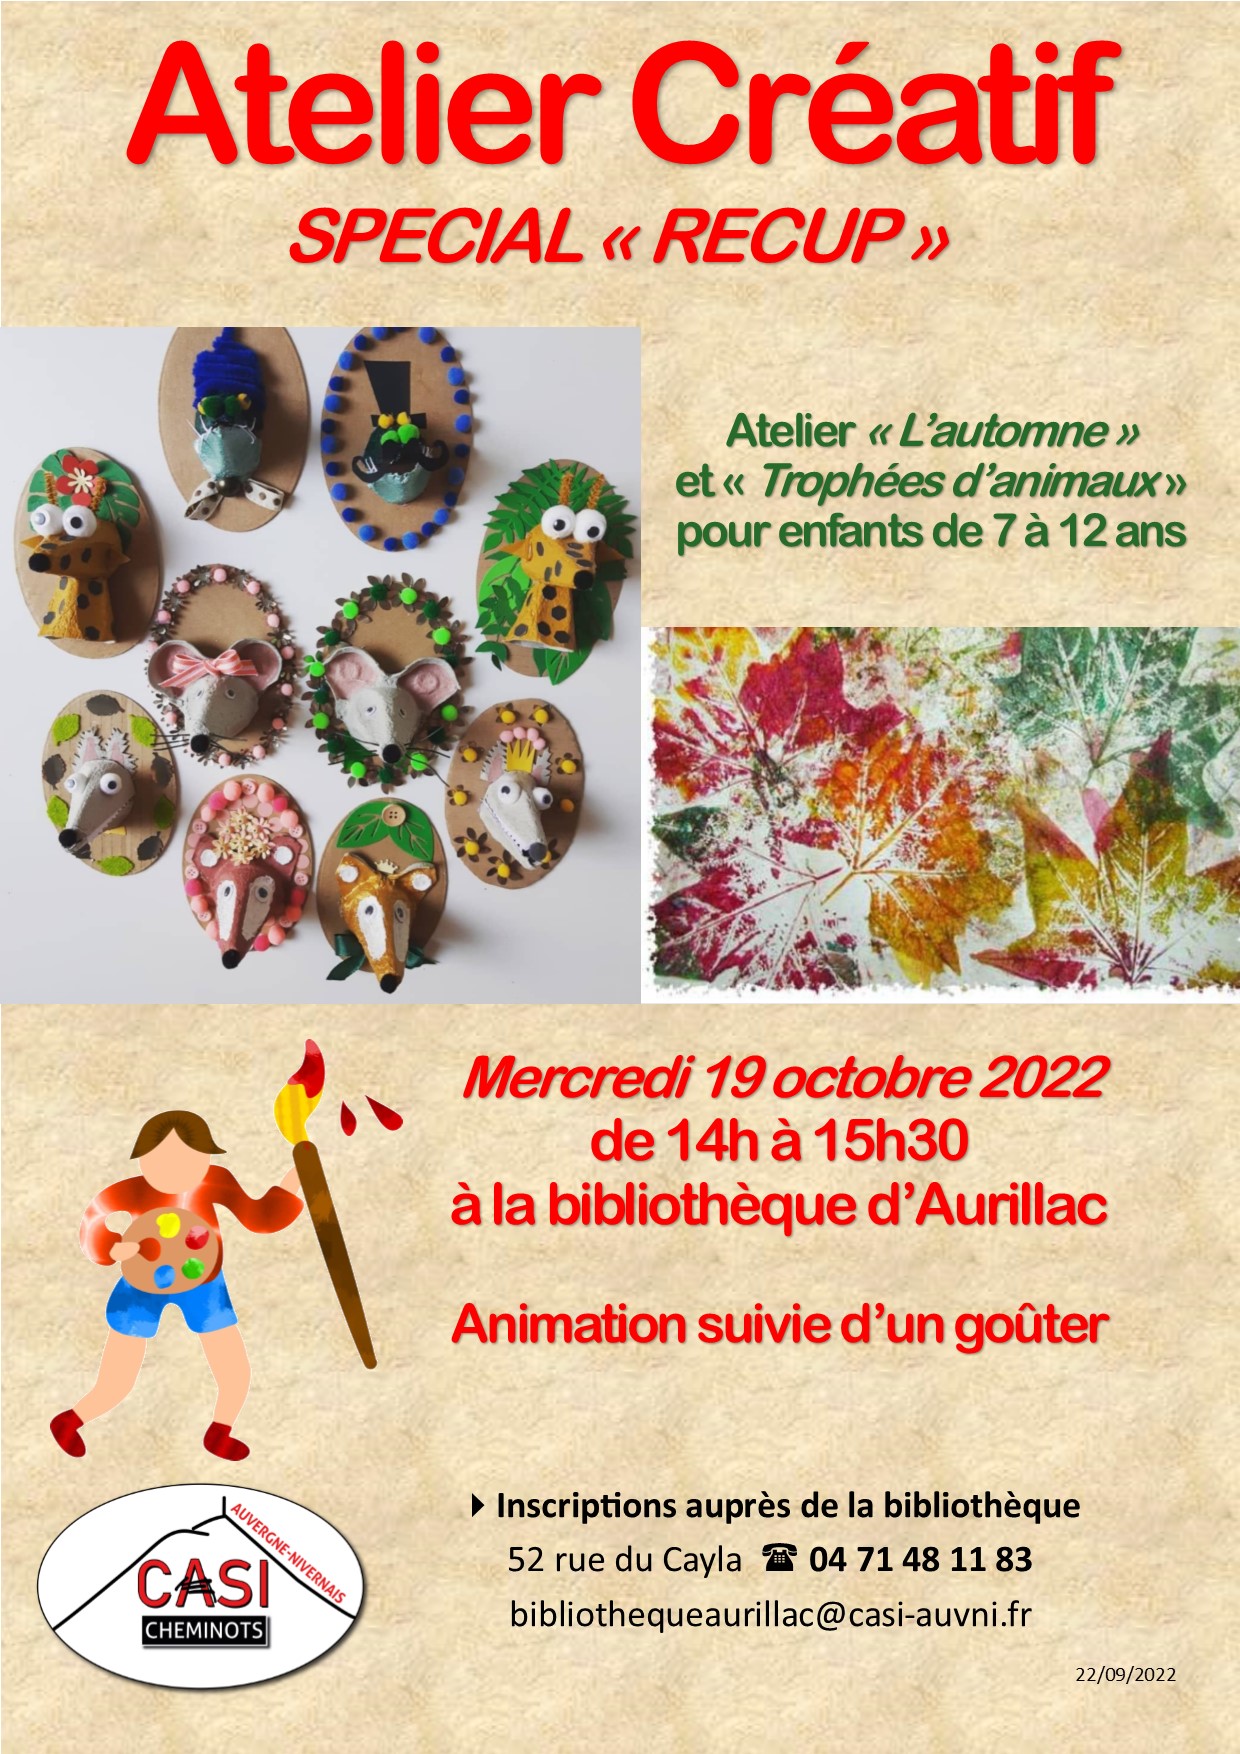 2022 Affiche Atelier Créatif Bib Aurillac